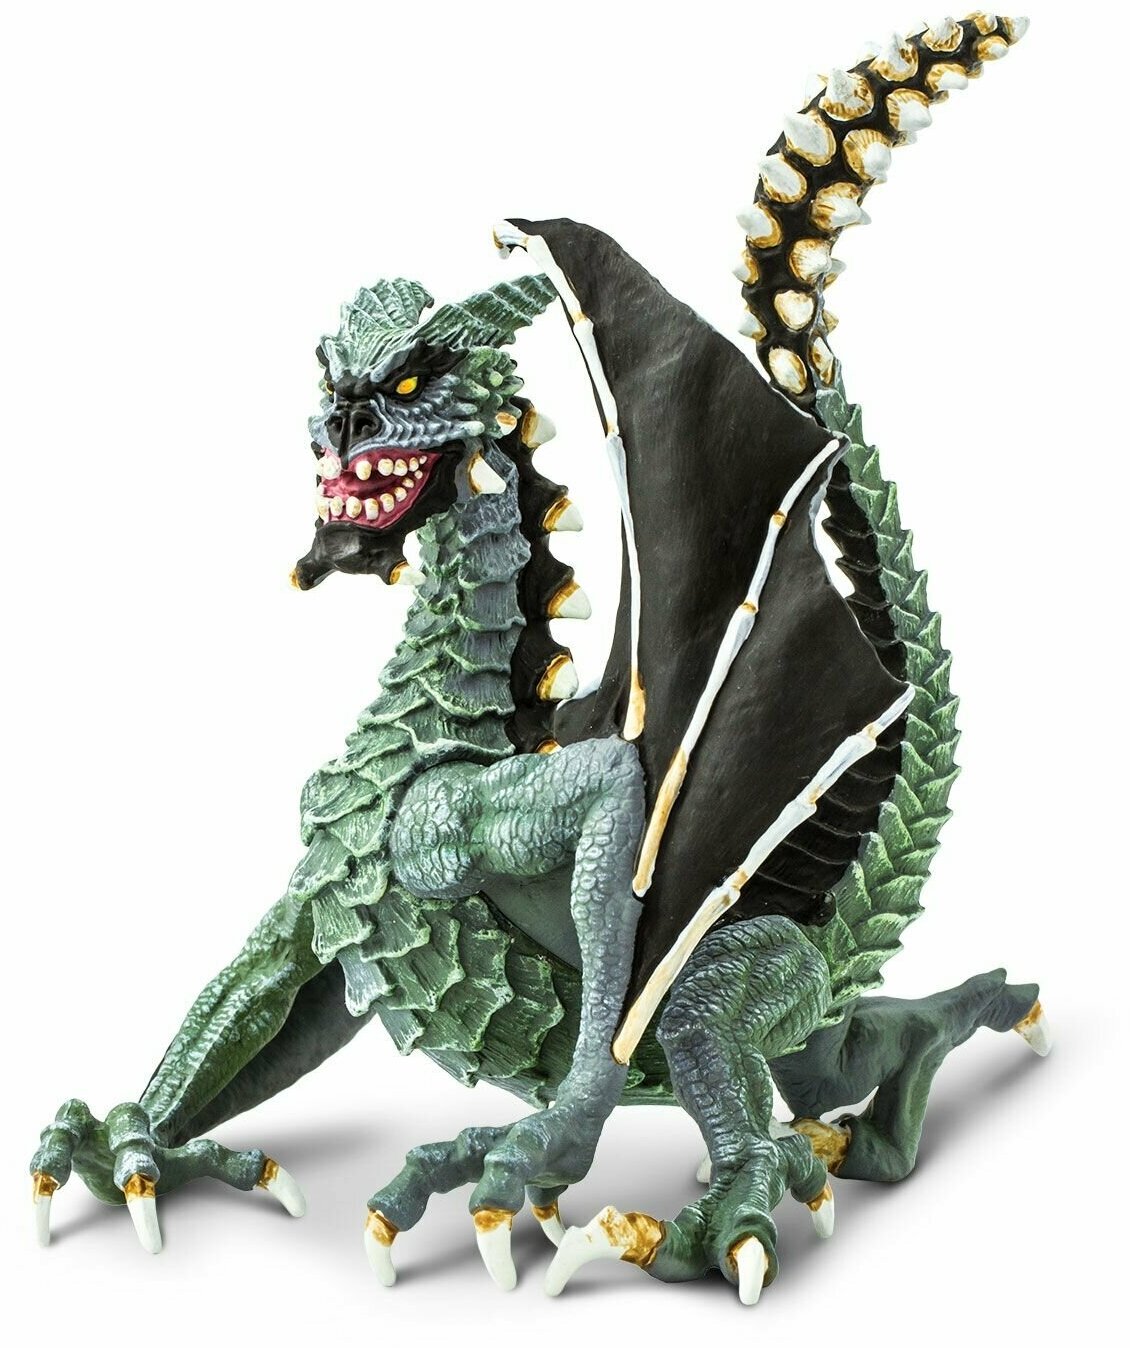 Фигурка дракона Safari Ltd Зловещий дракон, для детей, игрушка коллекционная, 10166